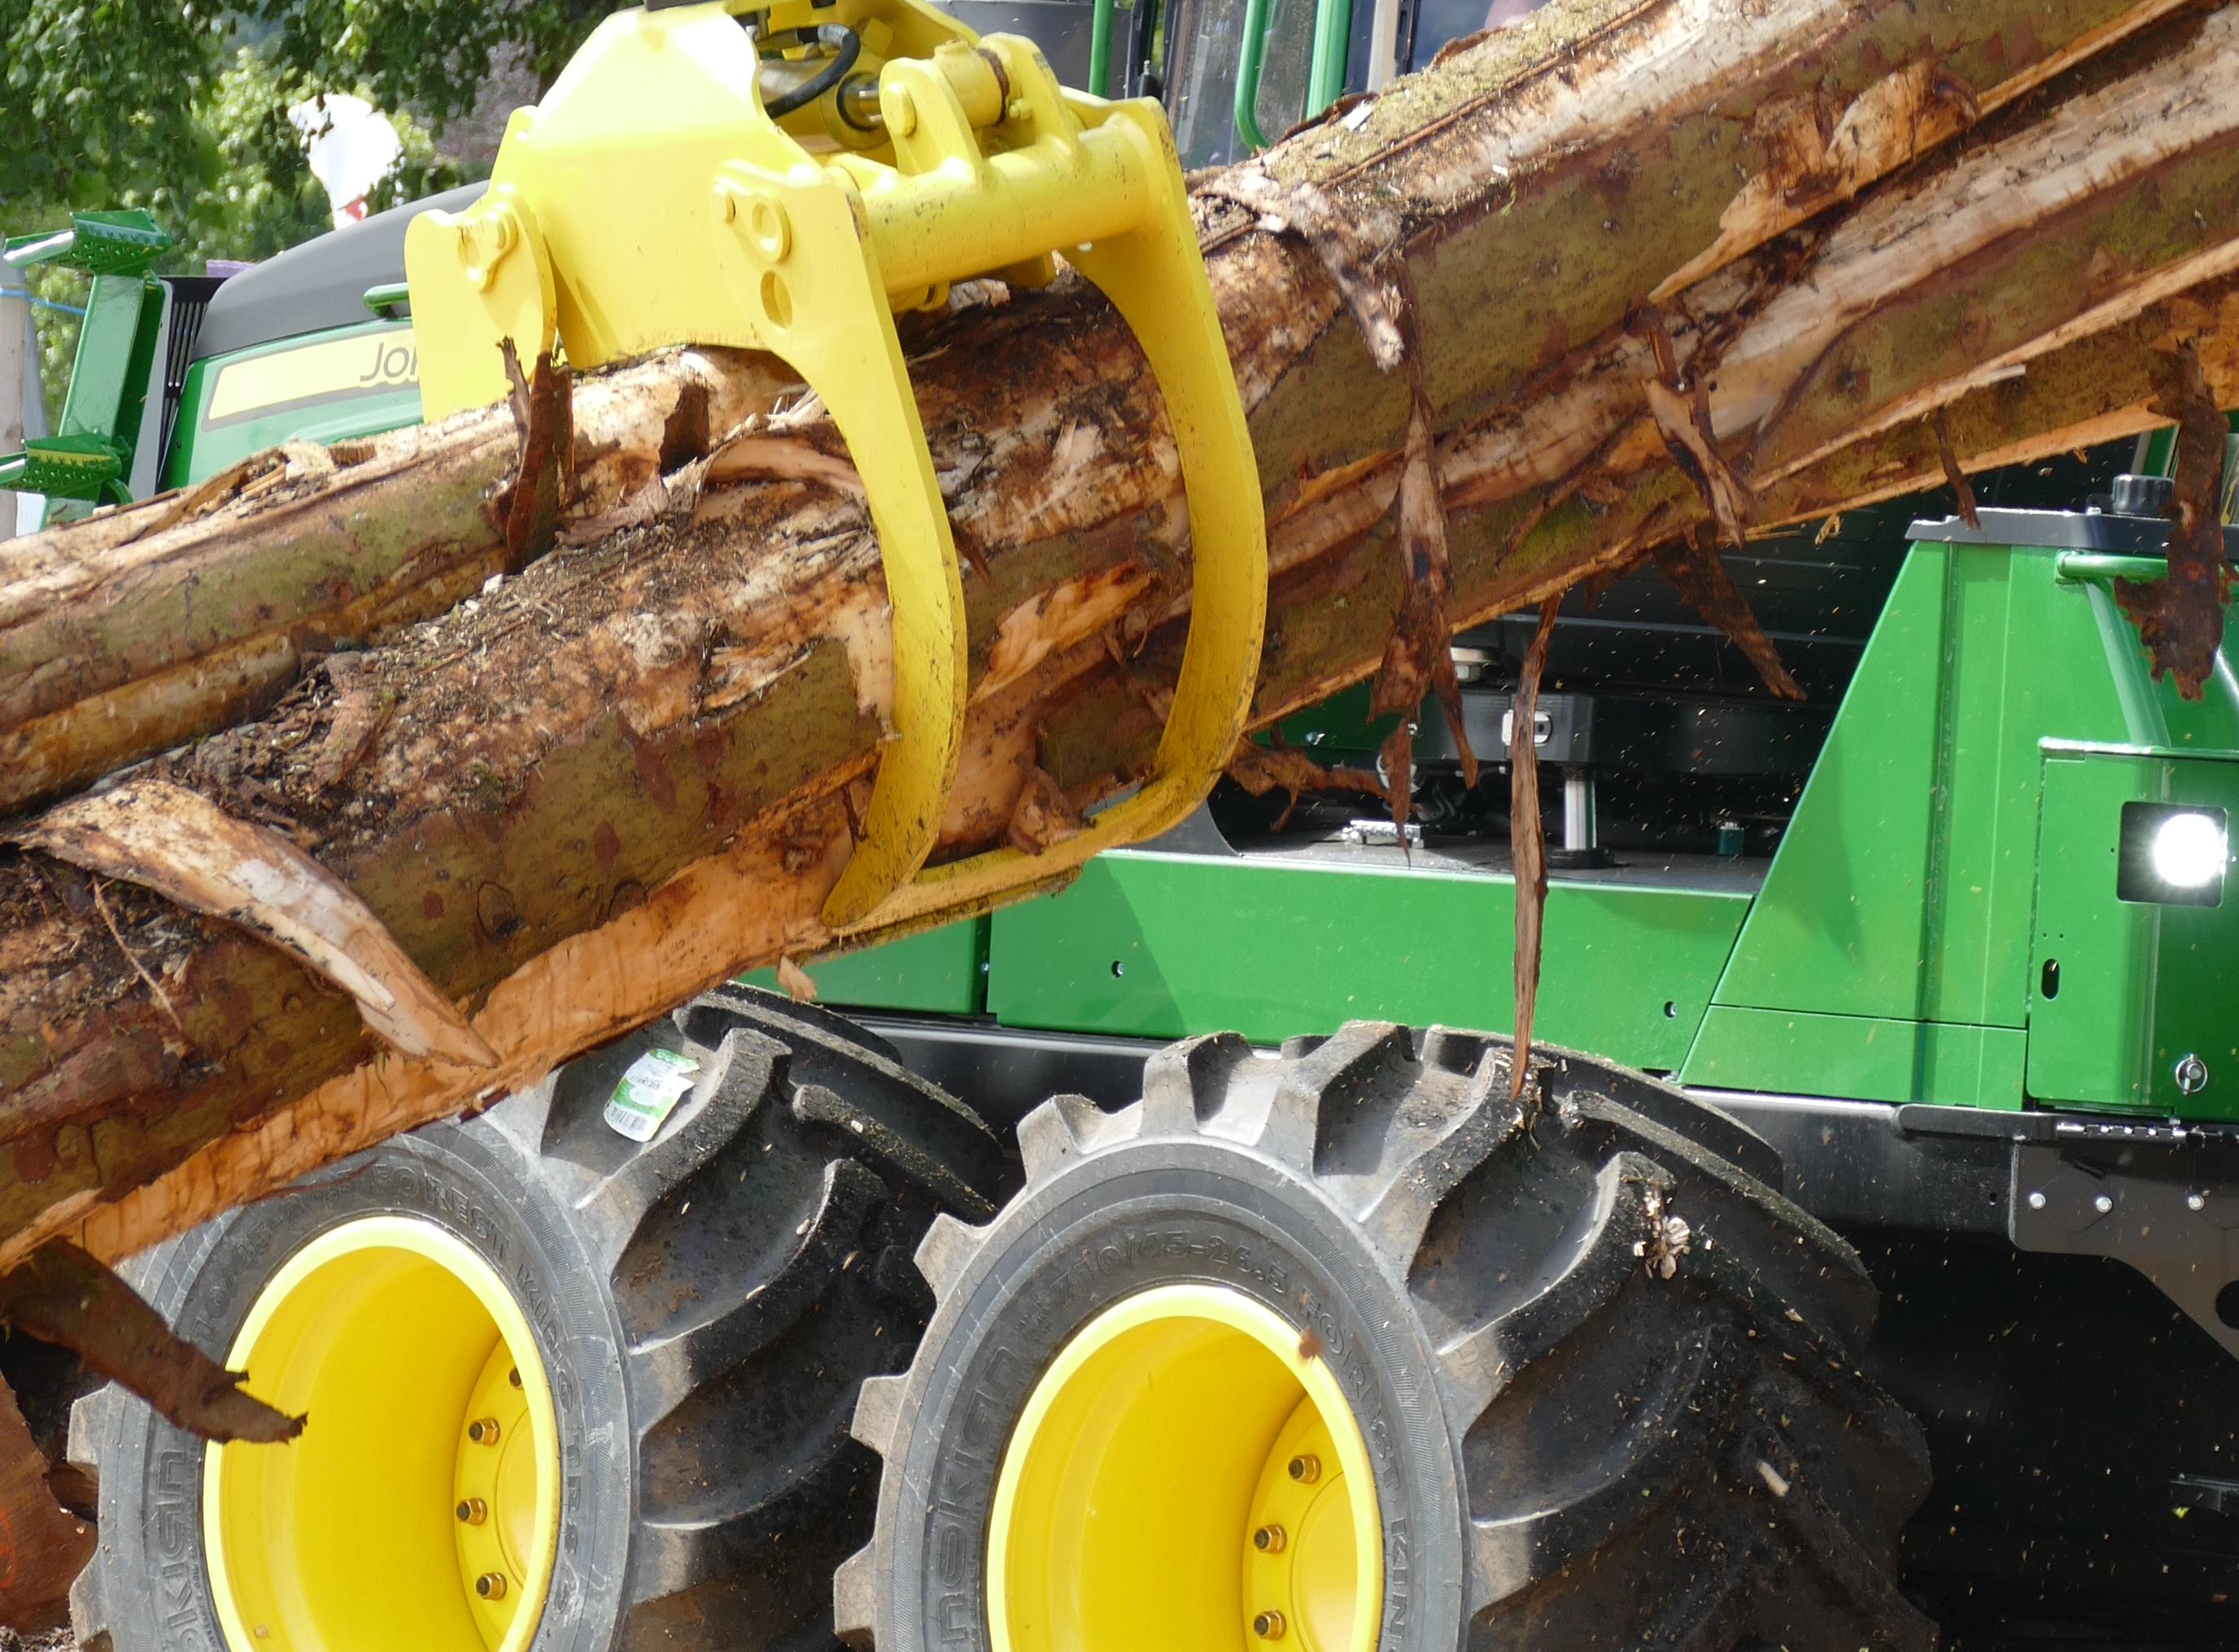 Machinery lifting logs